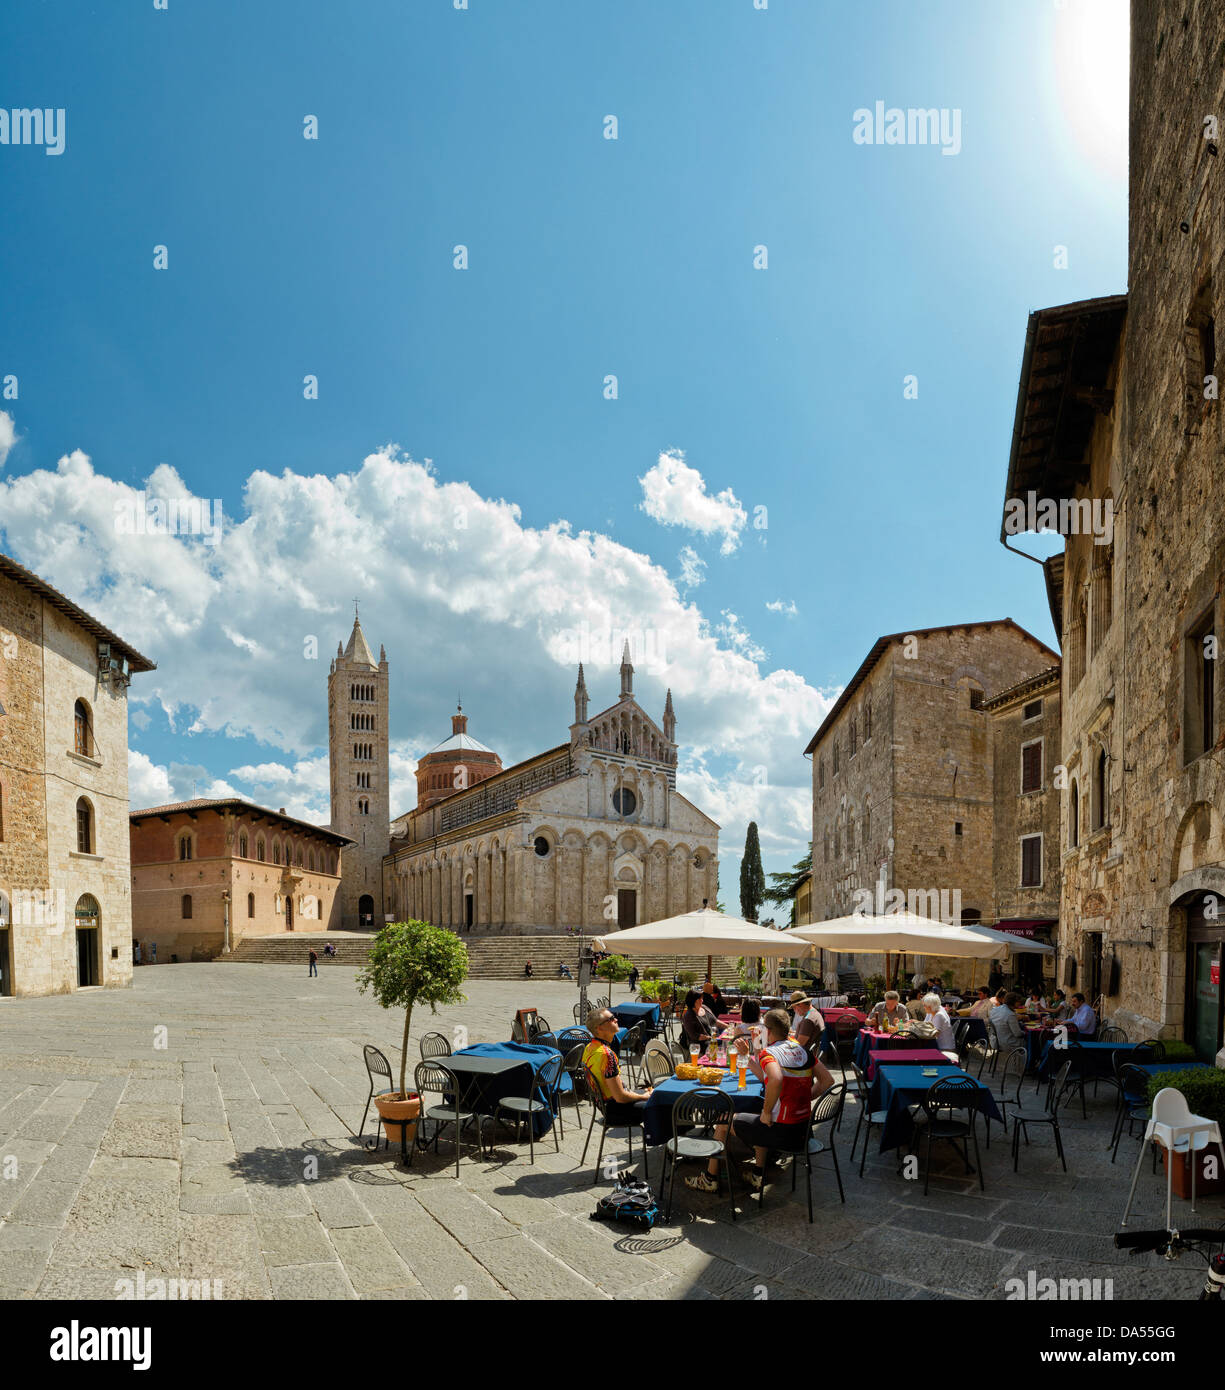 Massa Marittima, Italy, Europe, Tuscany, Toscana, place, street cafe Stock Photo